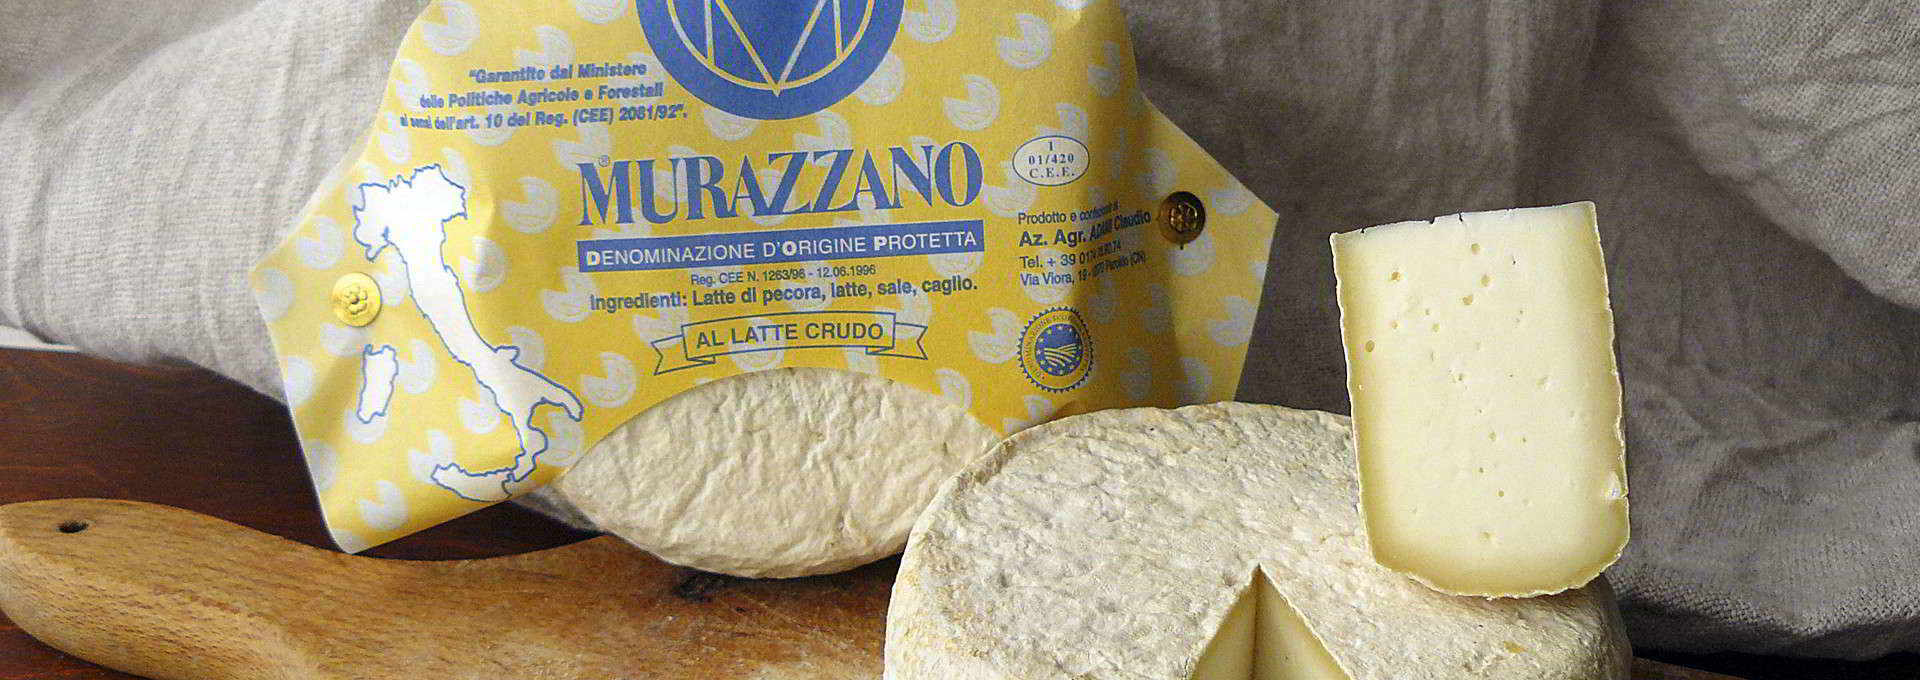 Murazzano Cheese